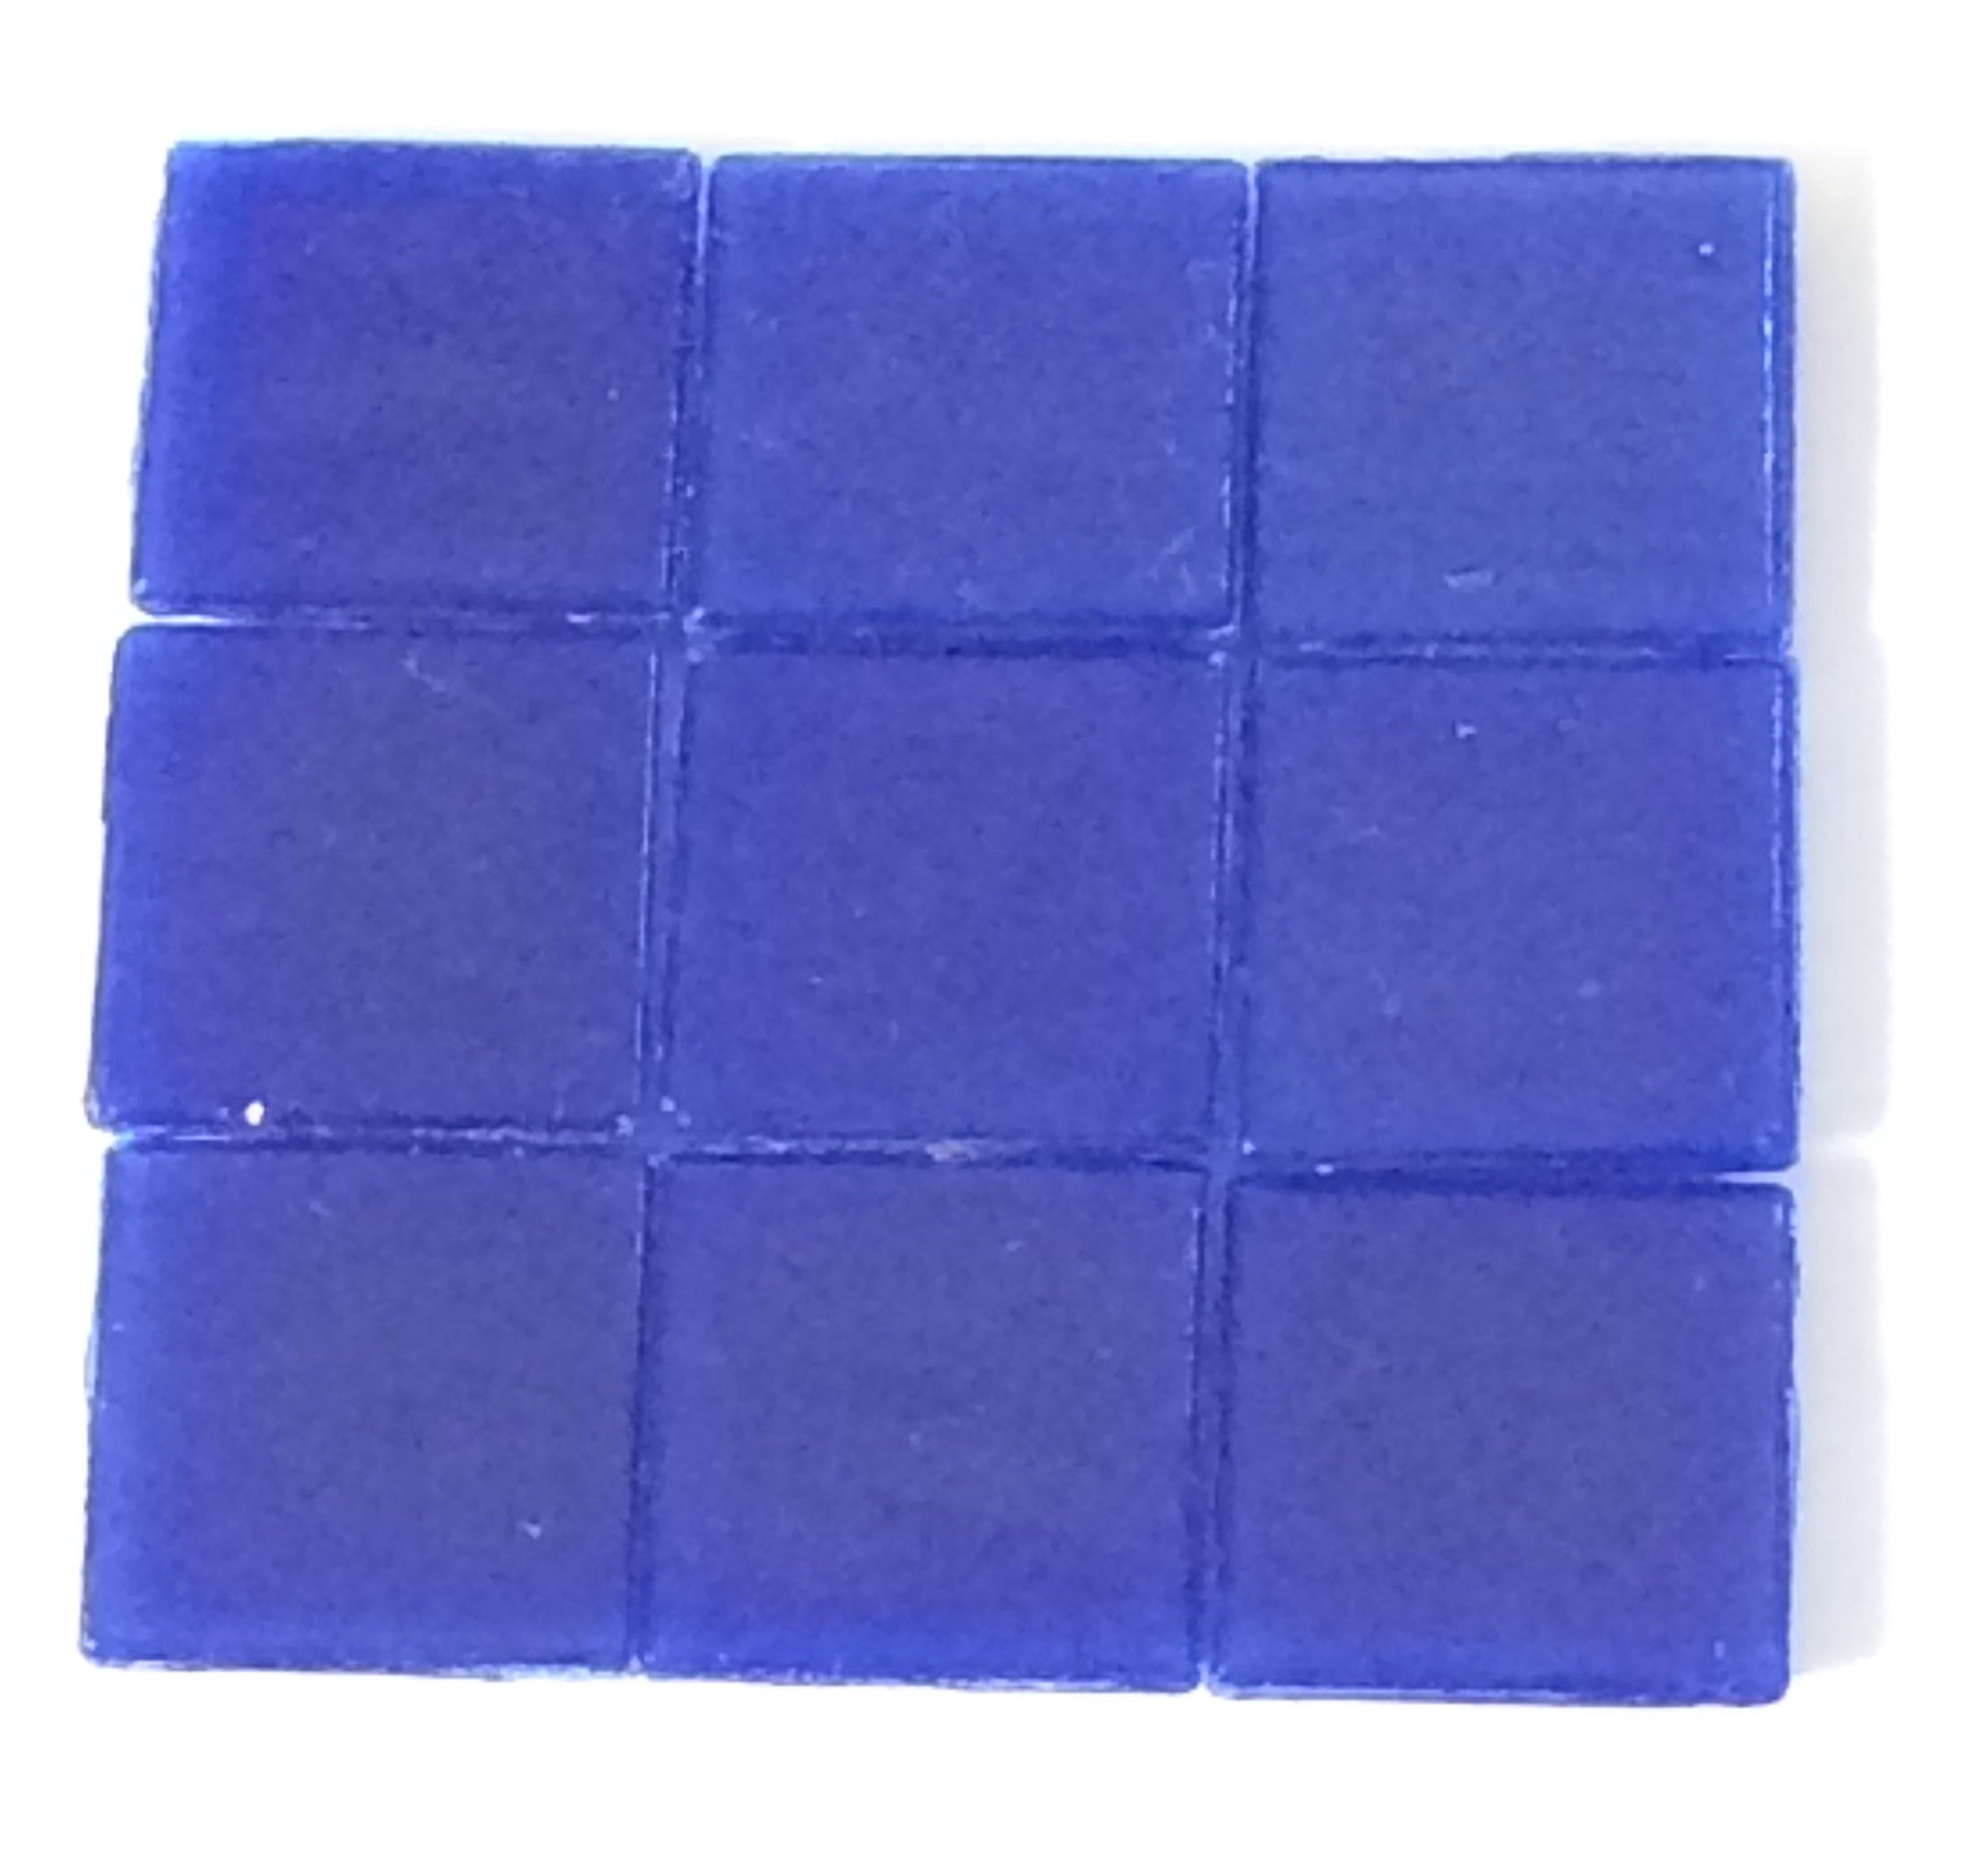 Pastilha Azul Forte -1.5x1.5cm -100un